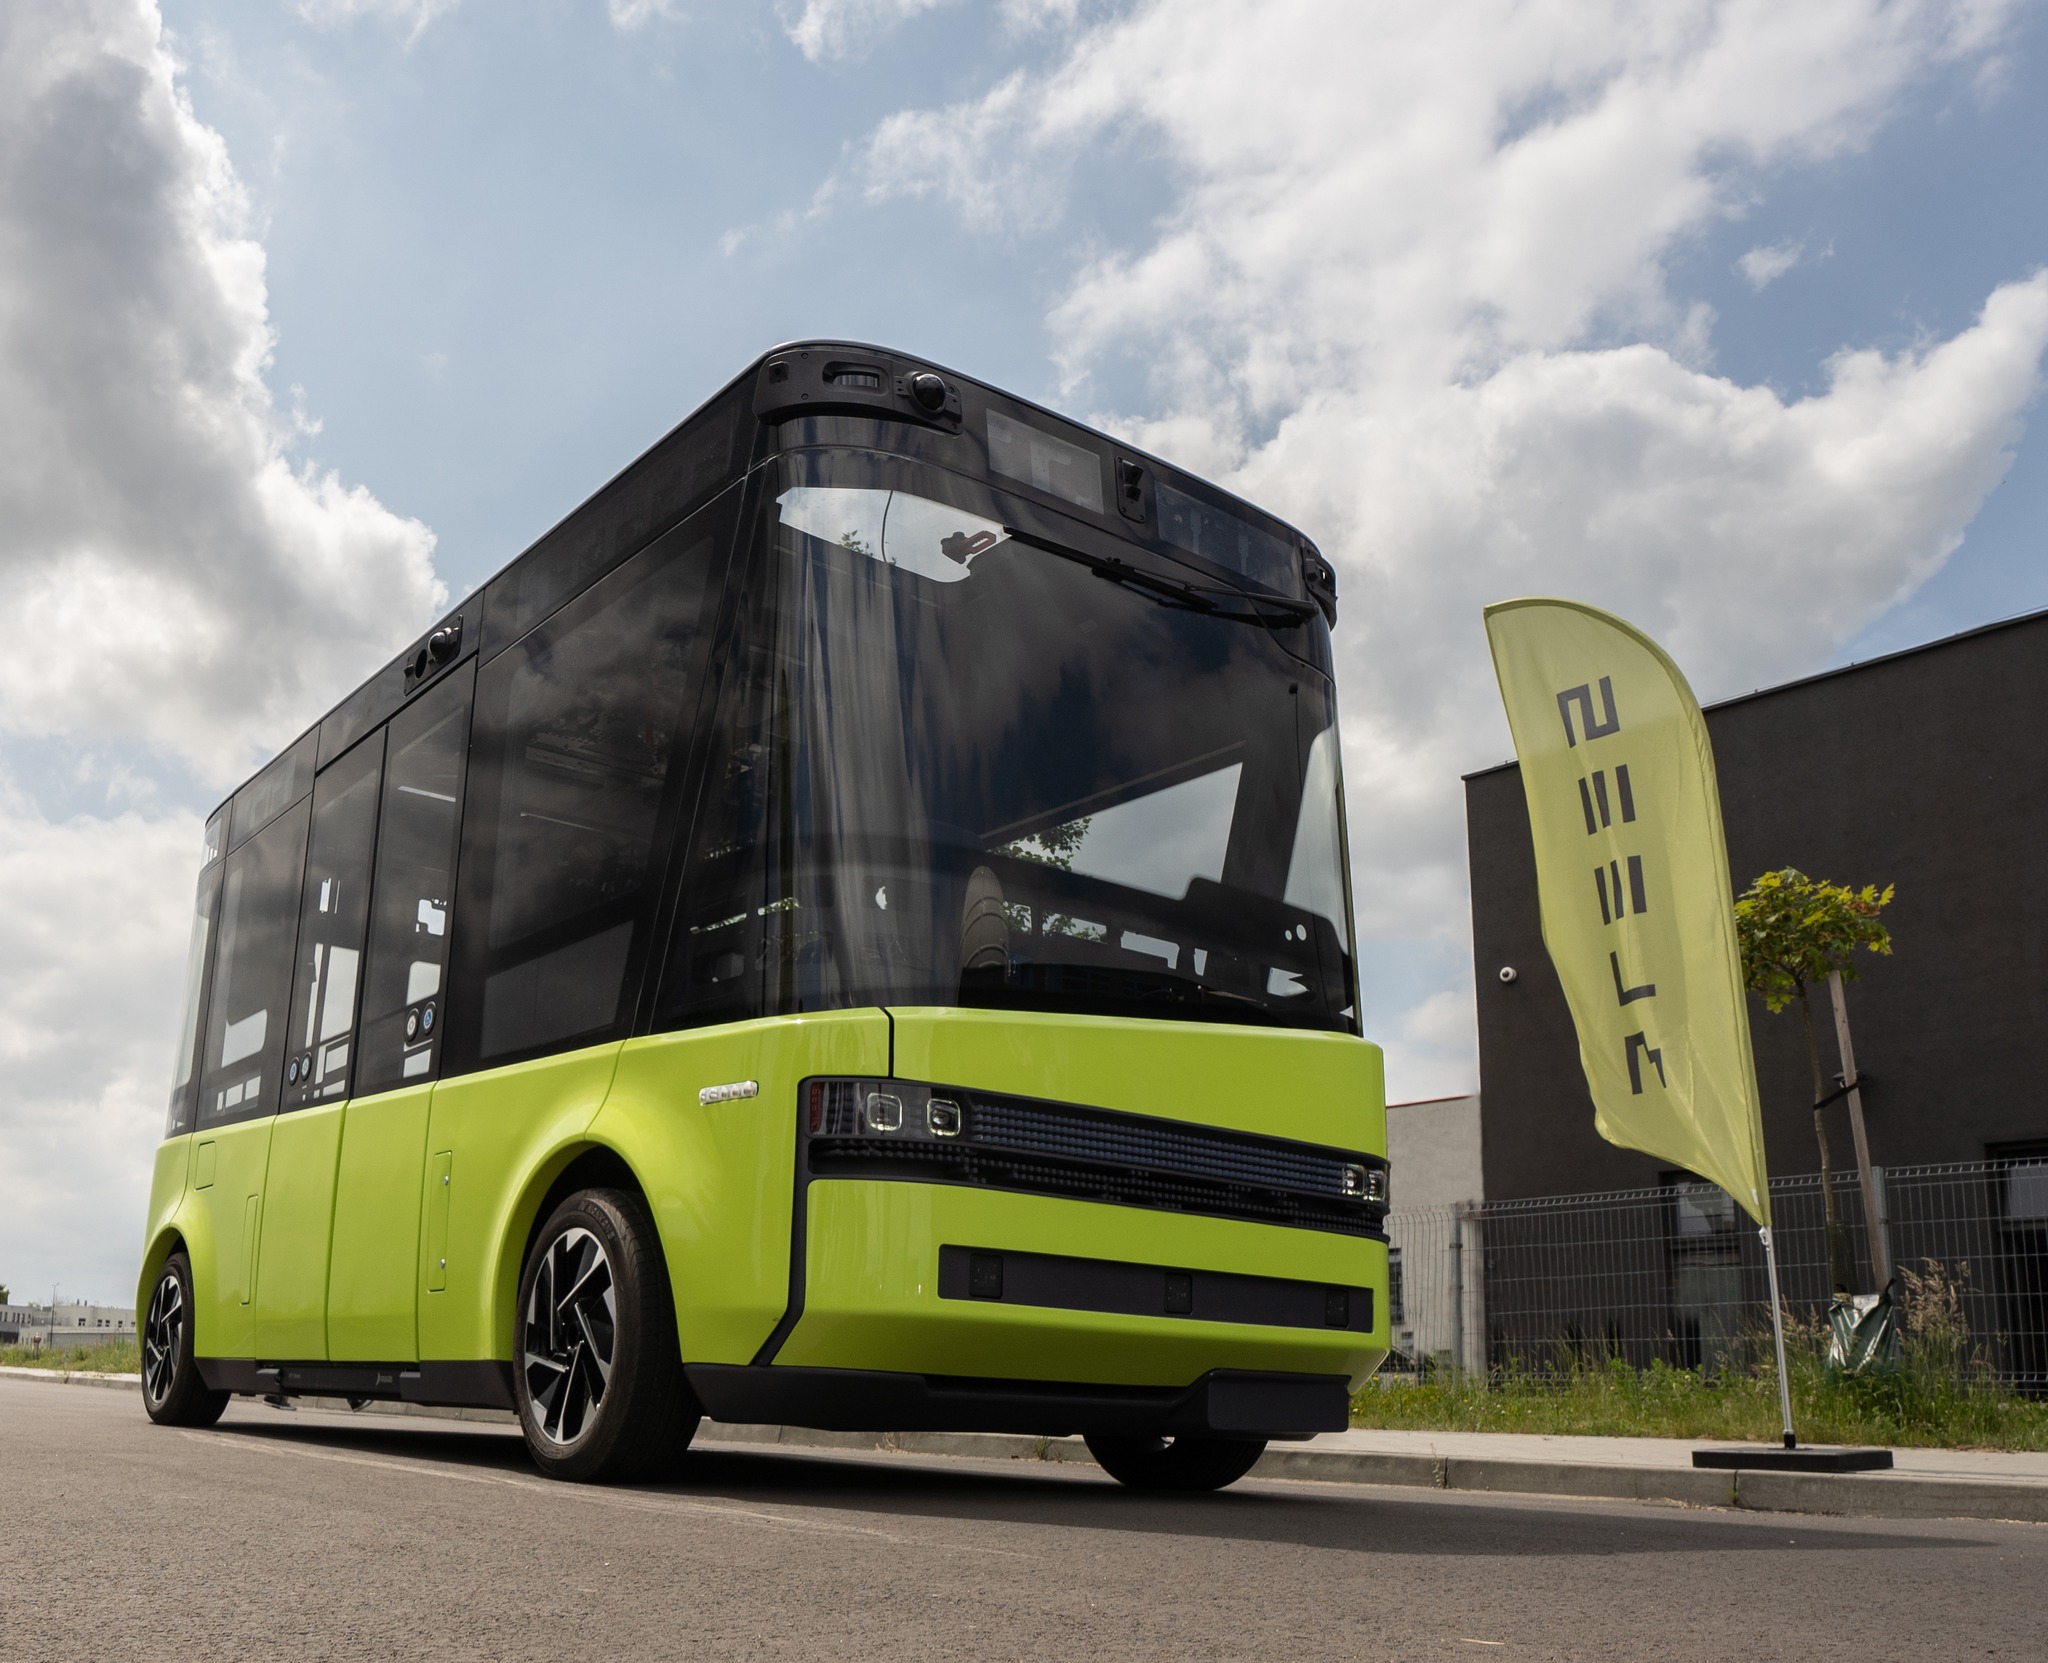 Samojezdnym minibusem do przyszłości! 13 listopada ruszą testy pojazdu Blees BB-1